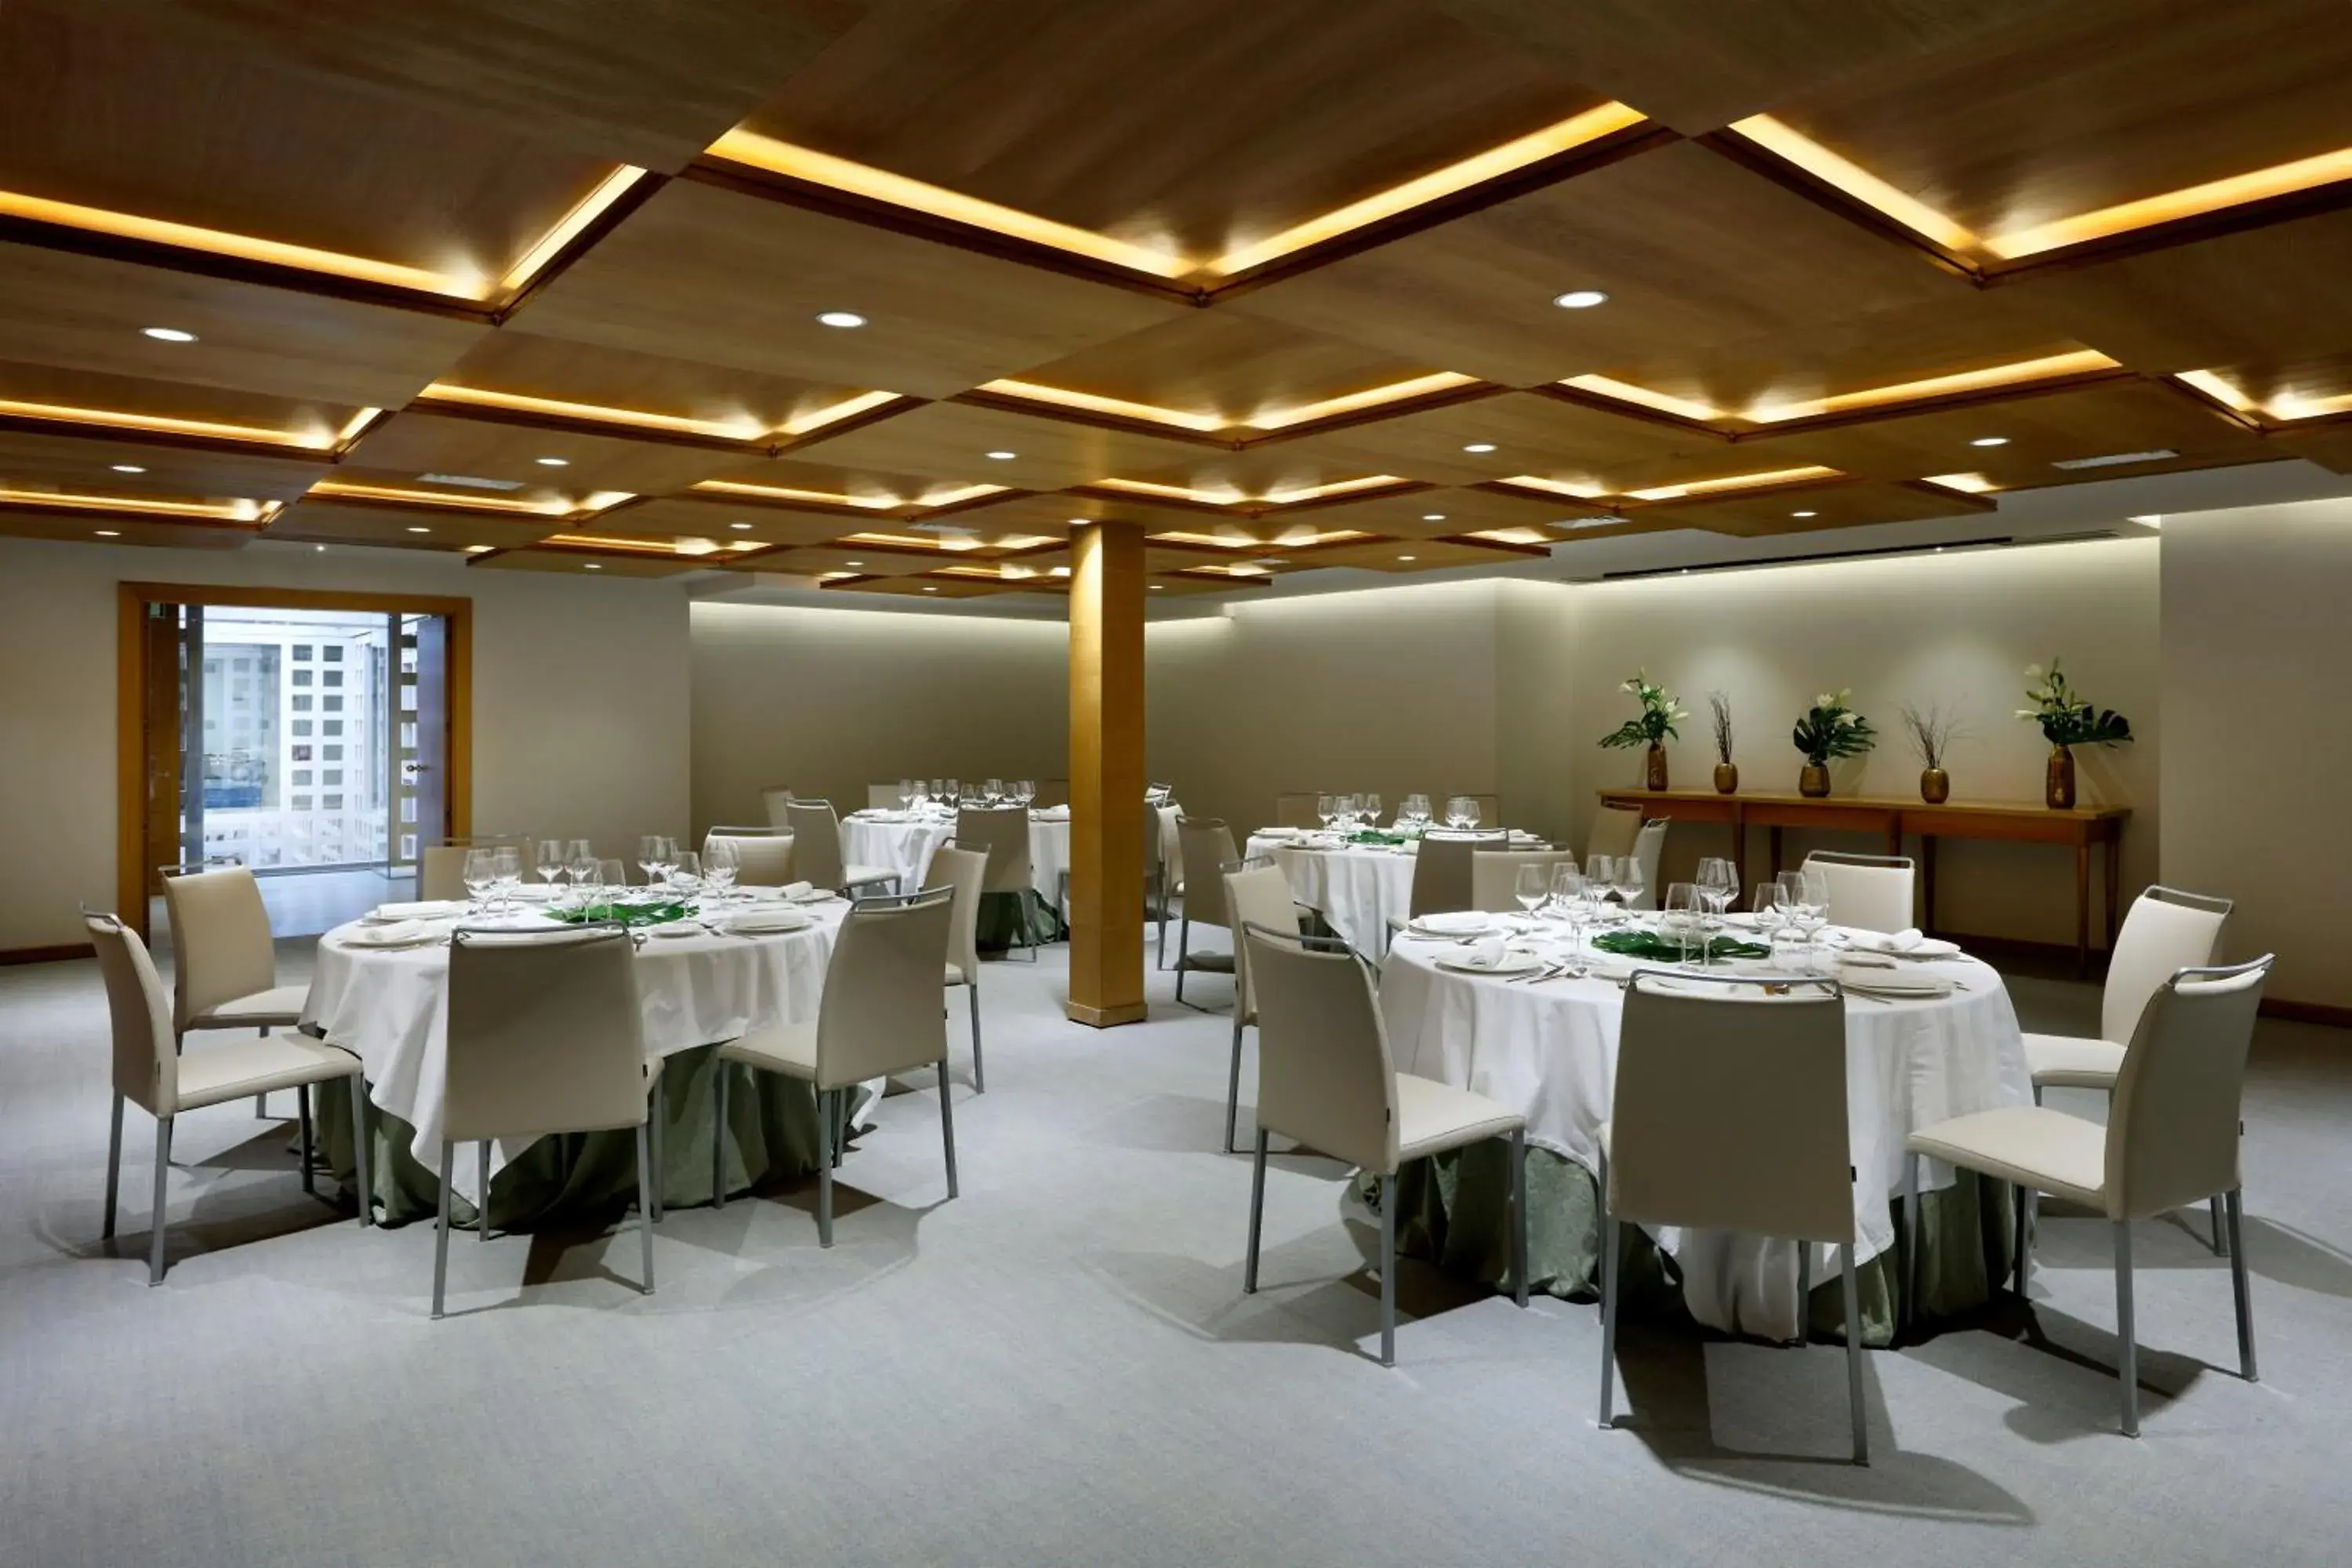 Banquet/Function facilities, Banquet Facilities in Hyatt Regency Hesperia Madrid